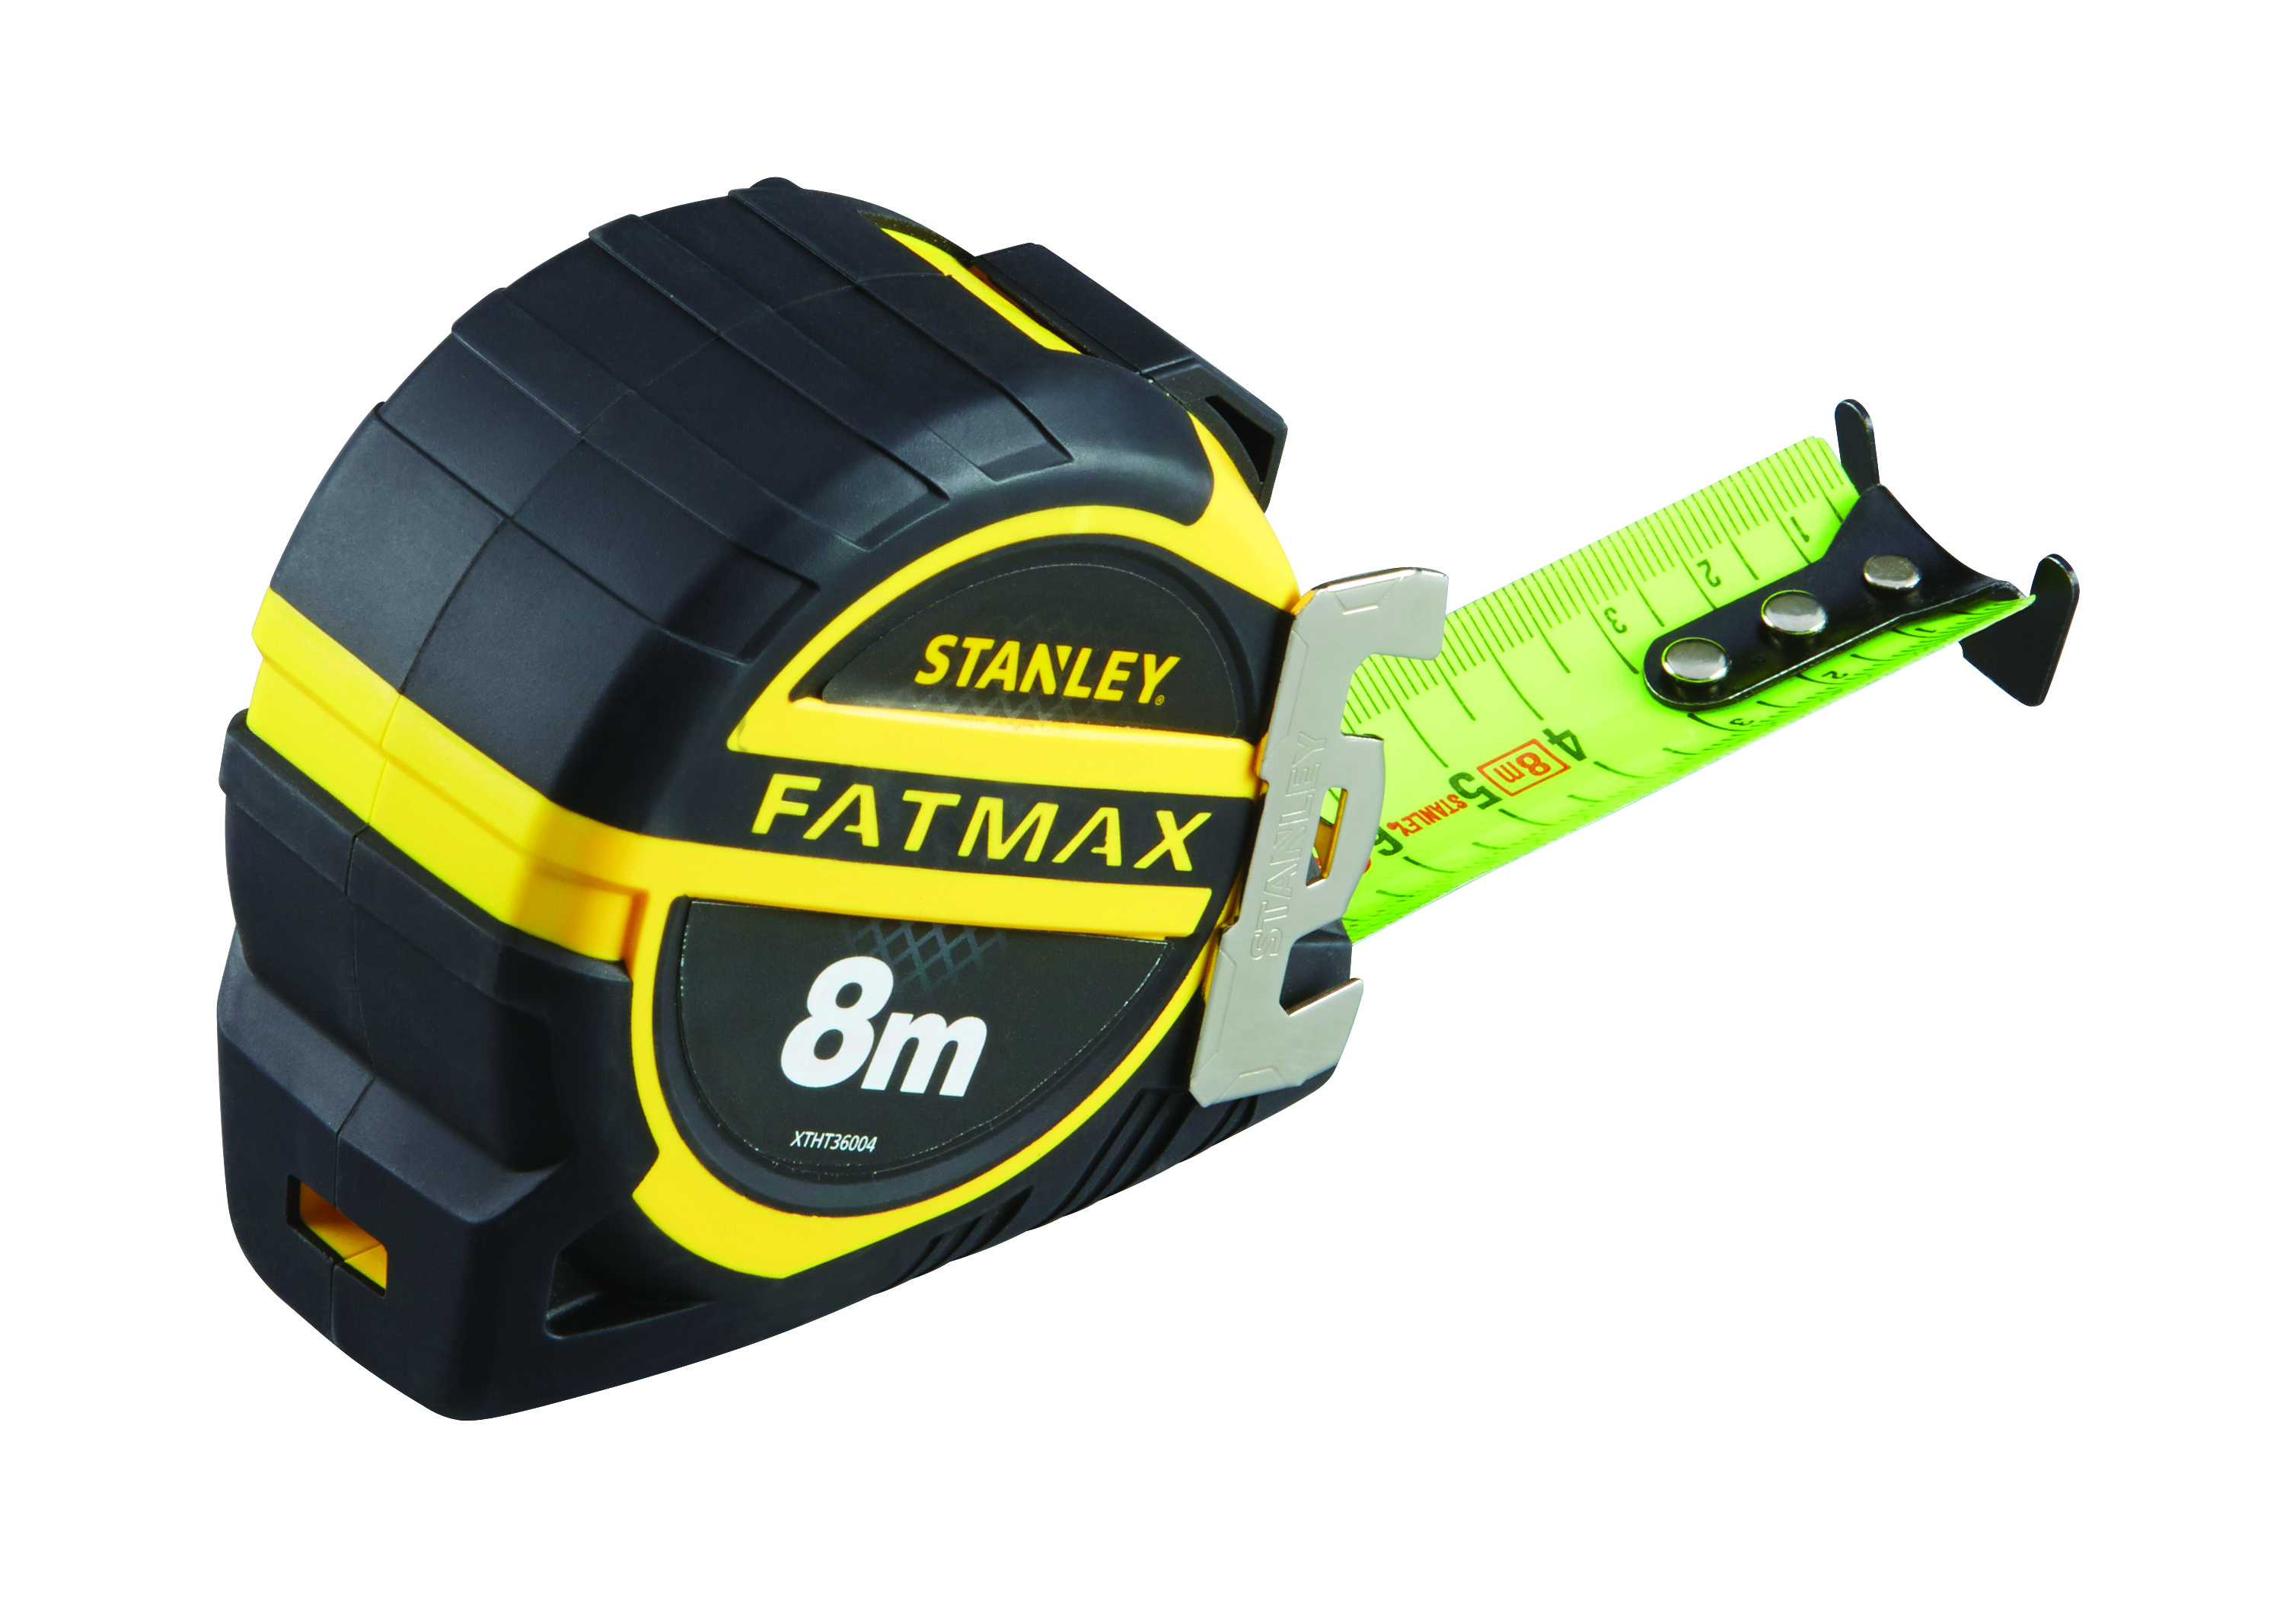 Mesure Fatmax Pro 8m - 32mm